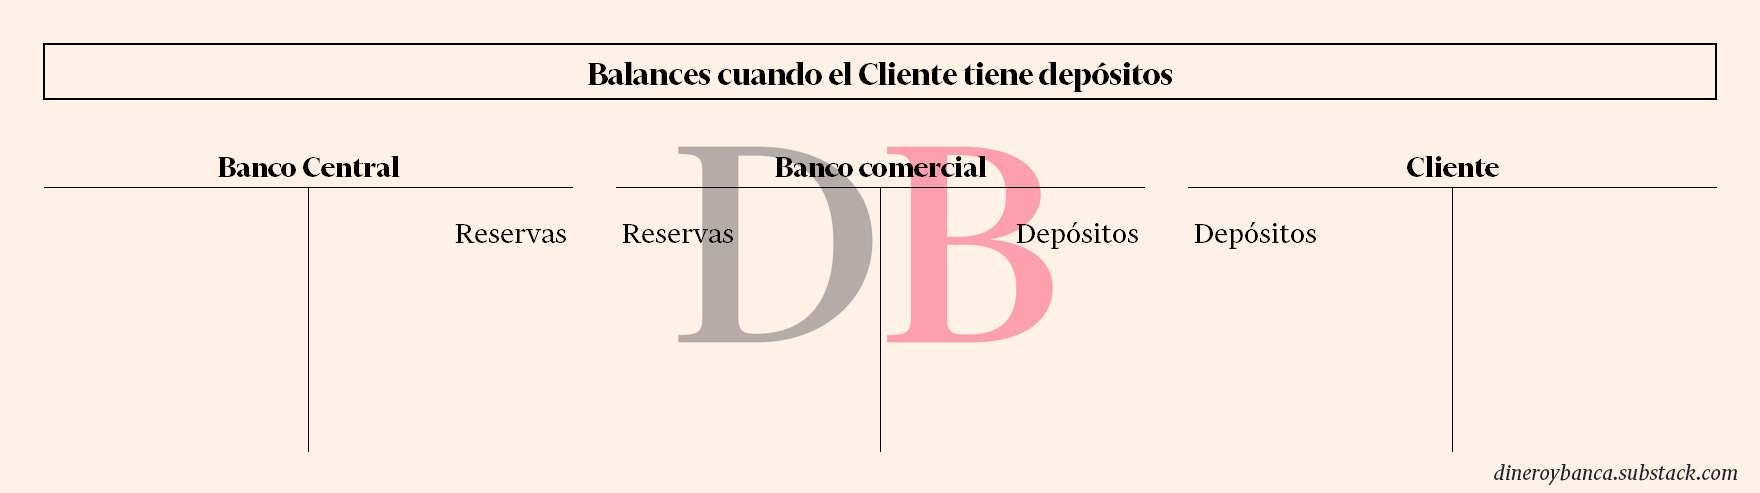 Balances del banco central, banco comercial y cliente del banco comercial cuando el cliente tiene depósitos